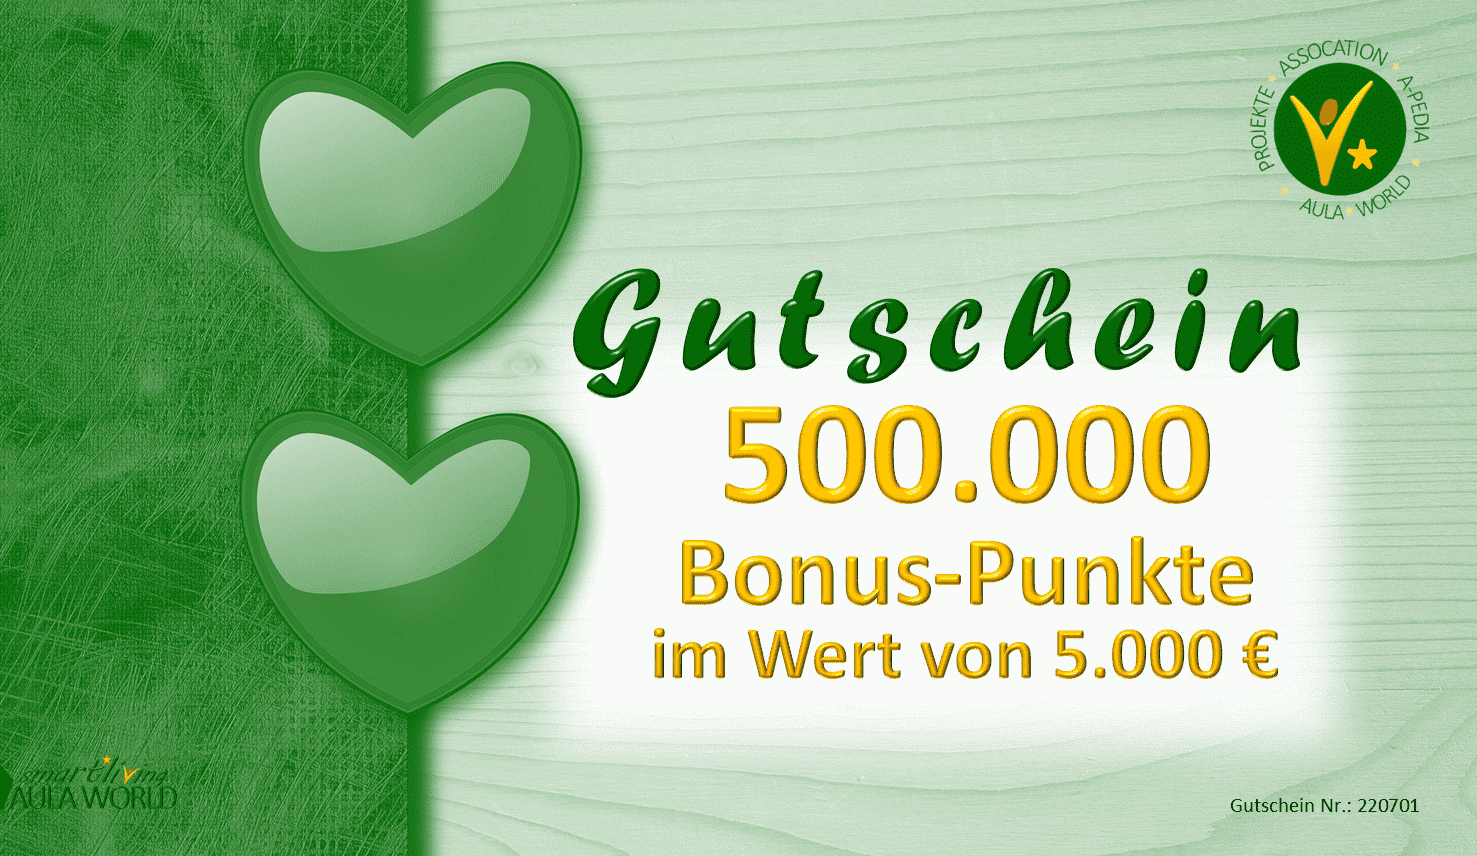 Geschenk-Gutschein "DONATION-5000" 